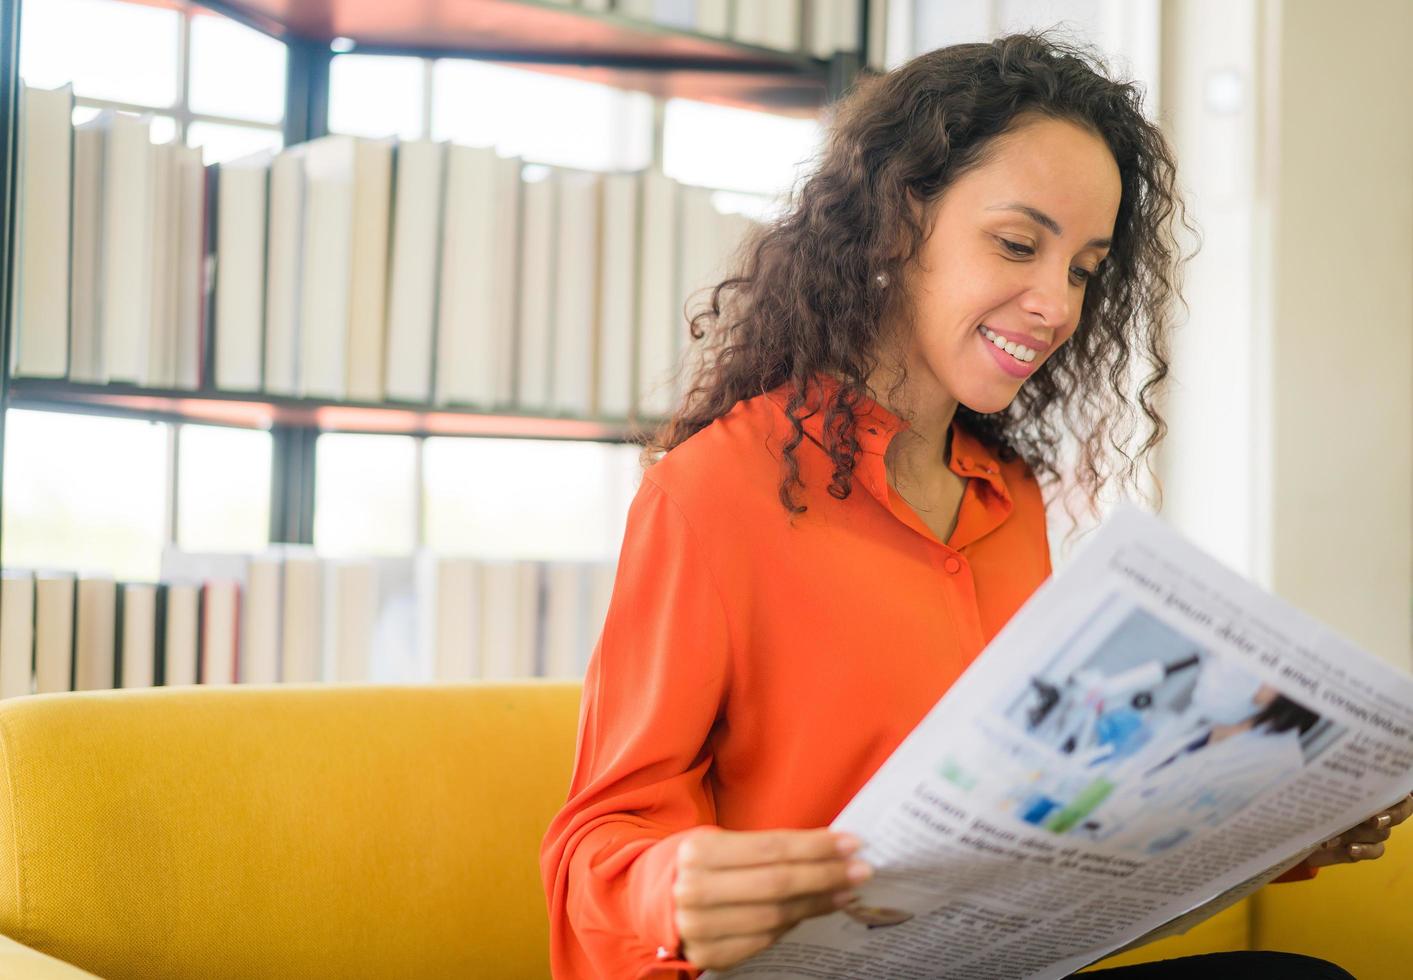 Latijns-Amerikaanse vrouw leest de krant op de bank foto